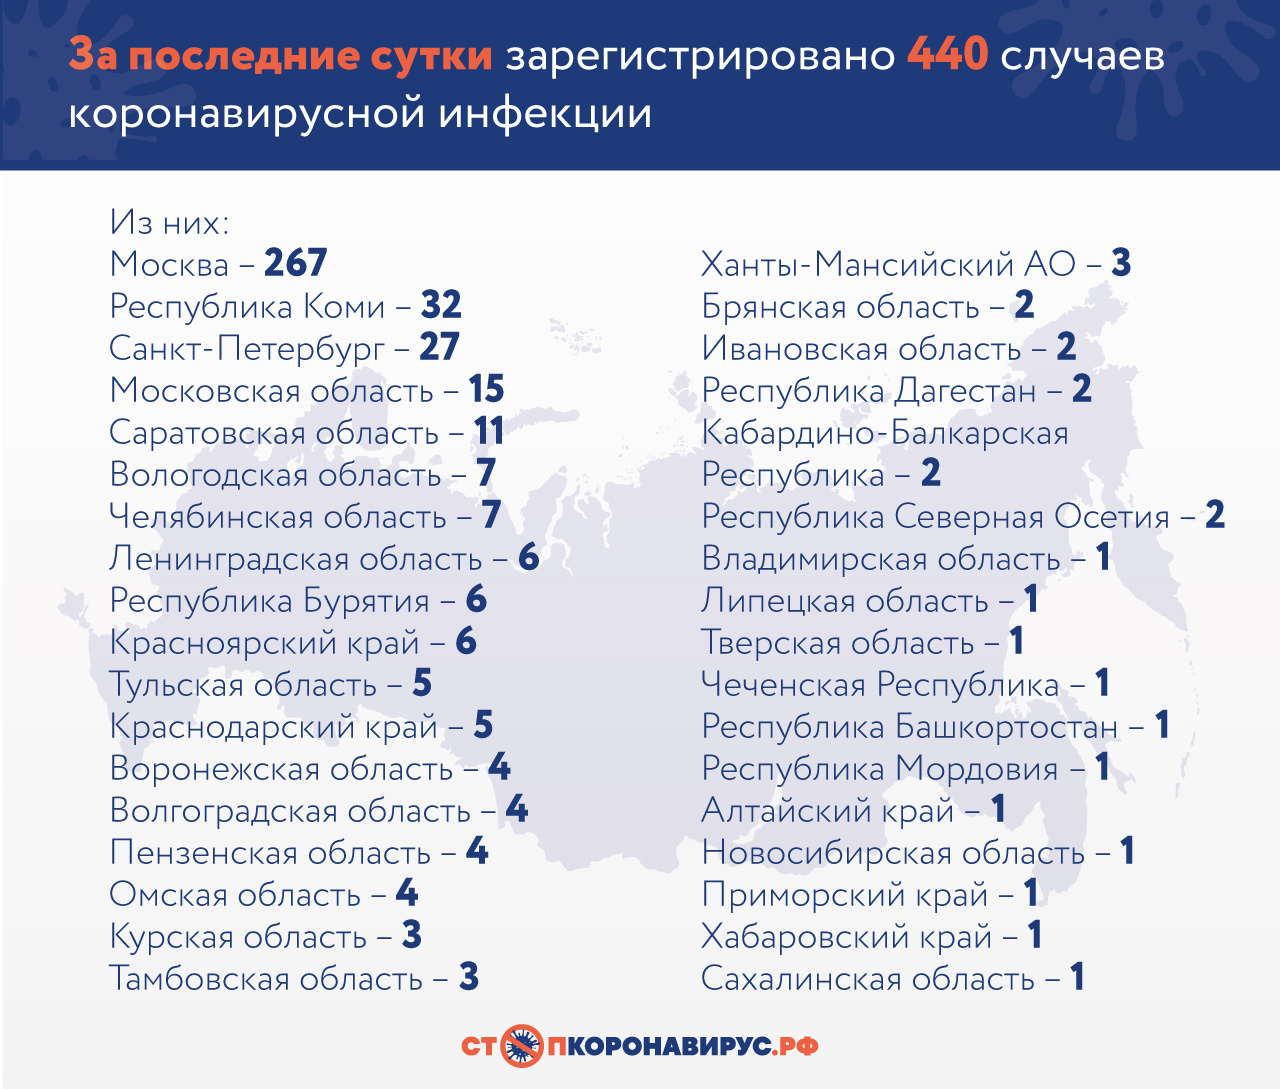 За последние сутки в России коронавирусом заболели 440, выздоровели 69 человек